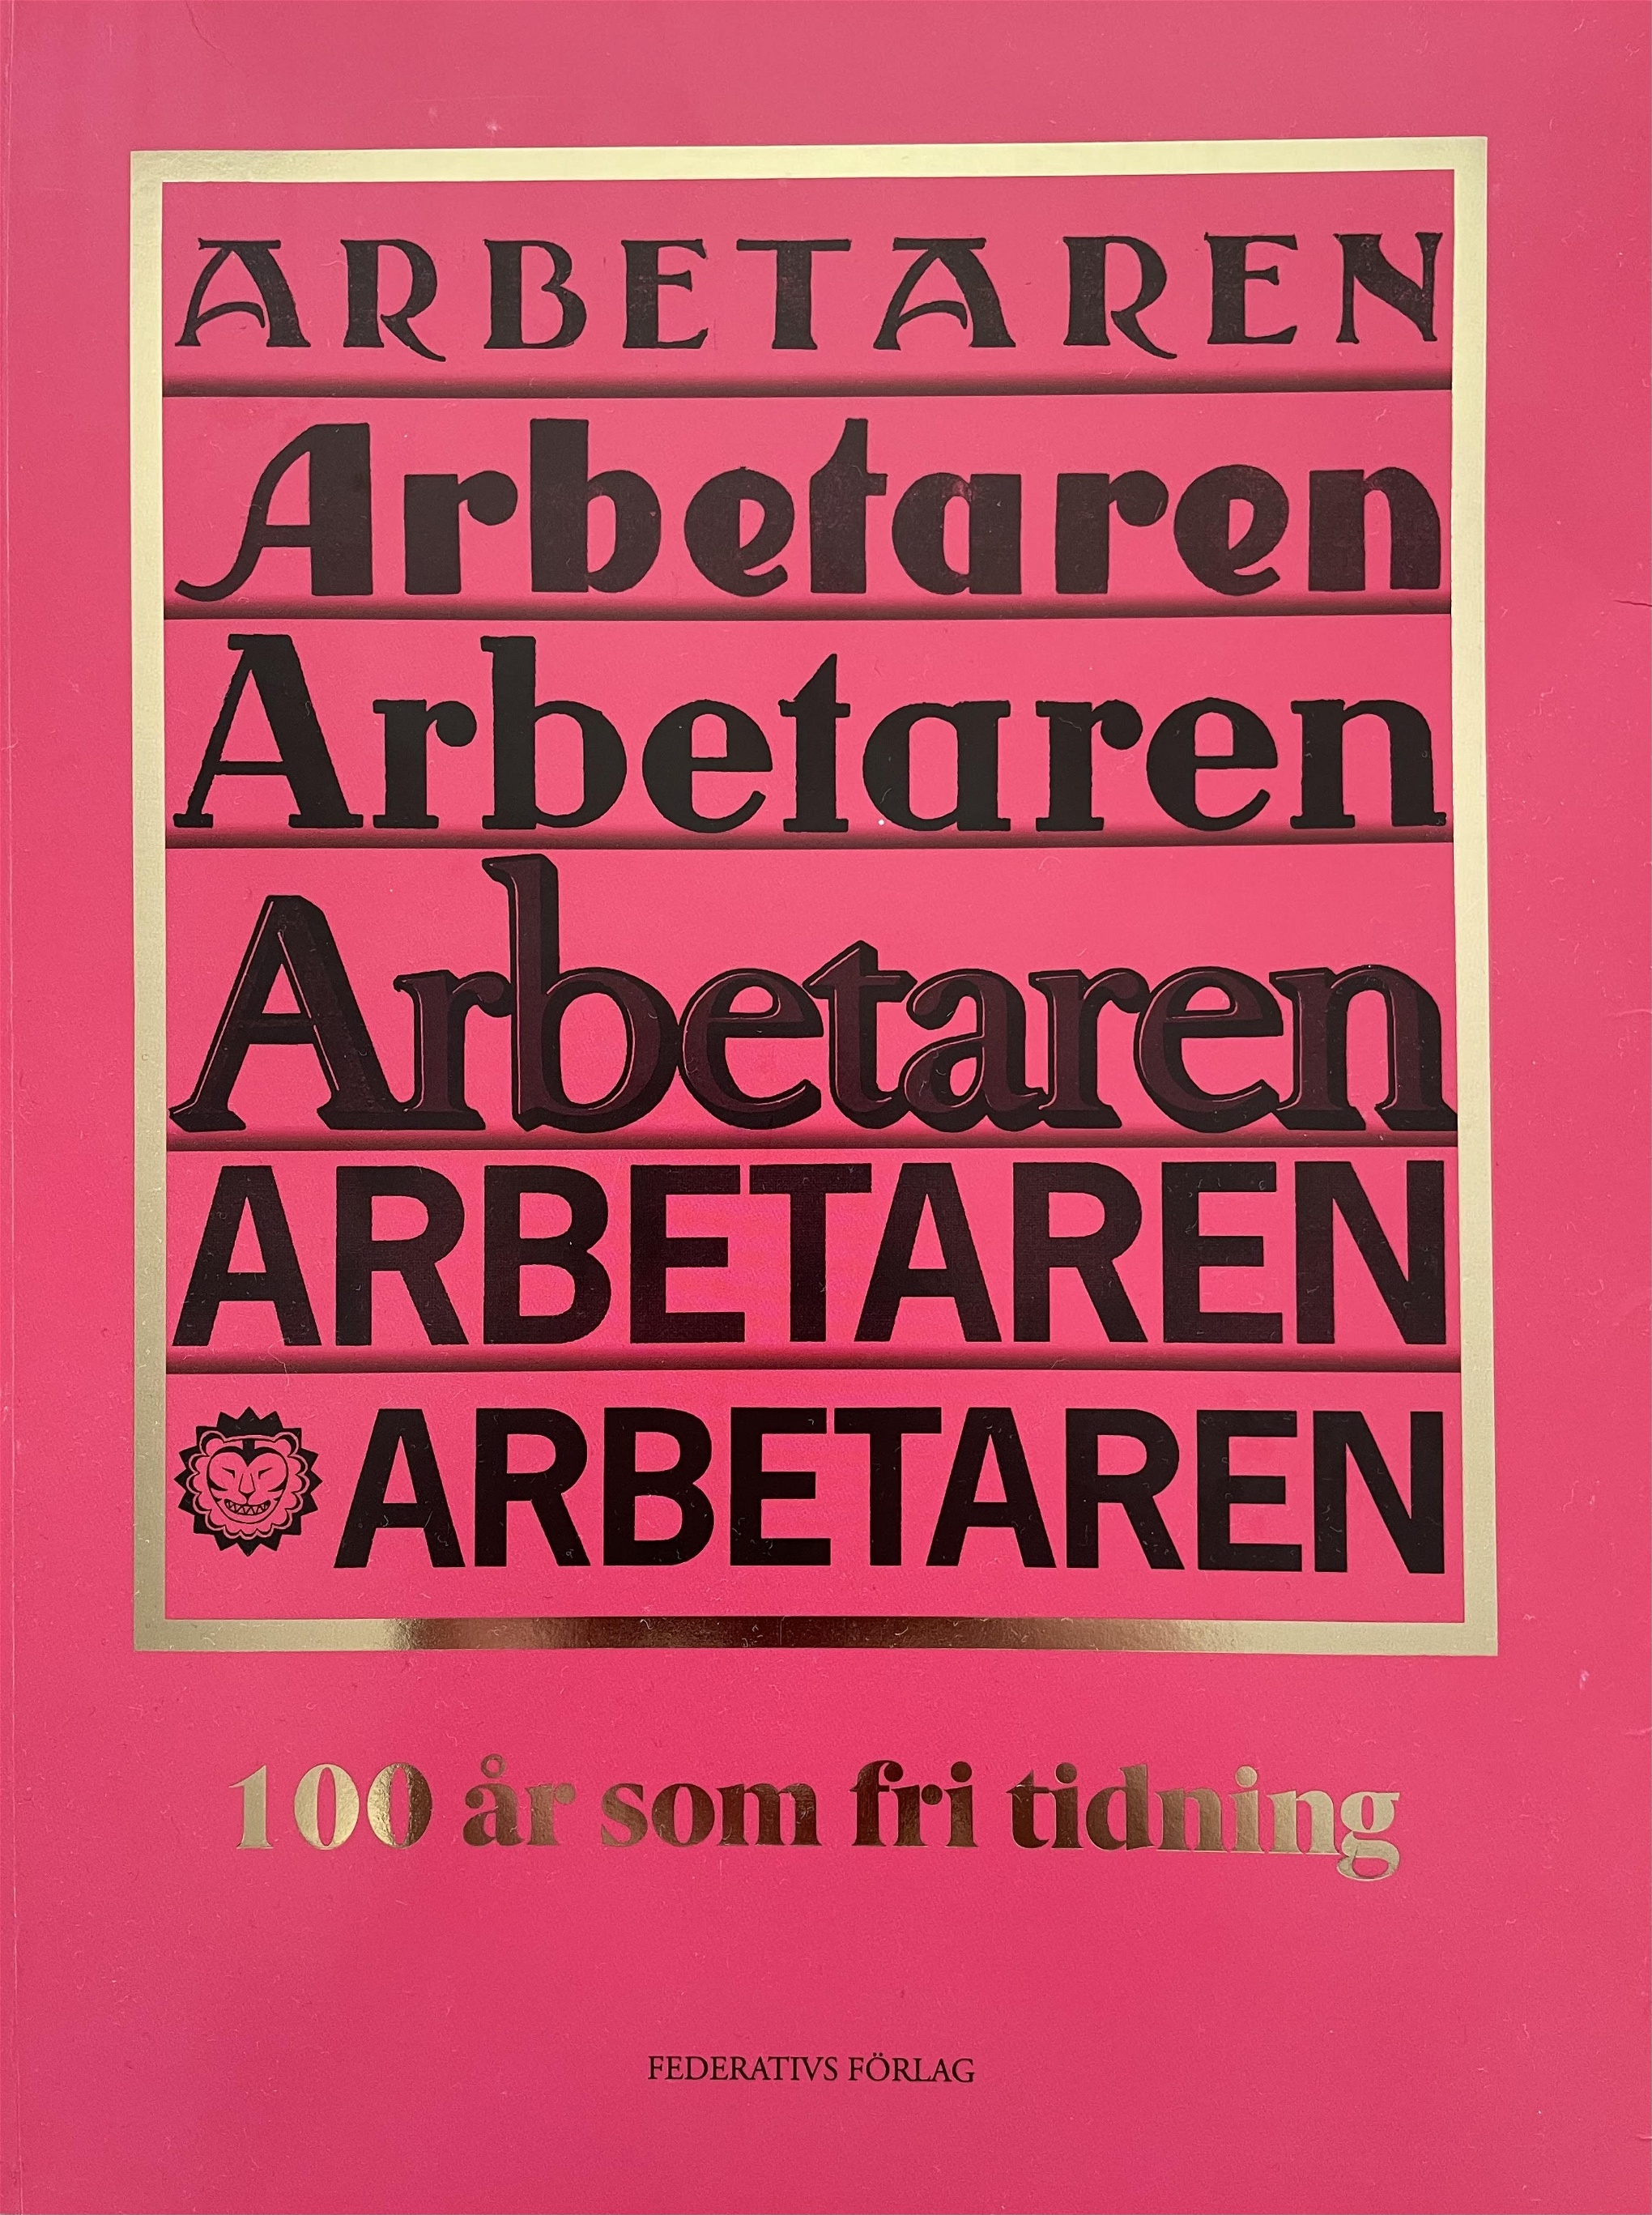 Arbetarens jubileumsbok släpps i dag den 29 september. Imorgon firas boken och att tidningen fyller 100 år på Medborgarhuset i Stockholm. 